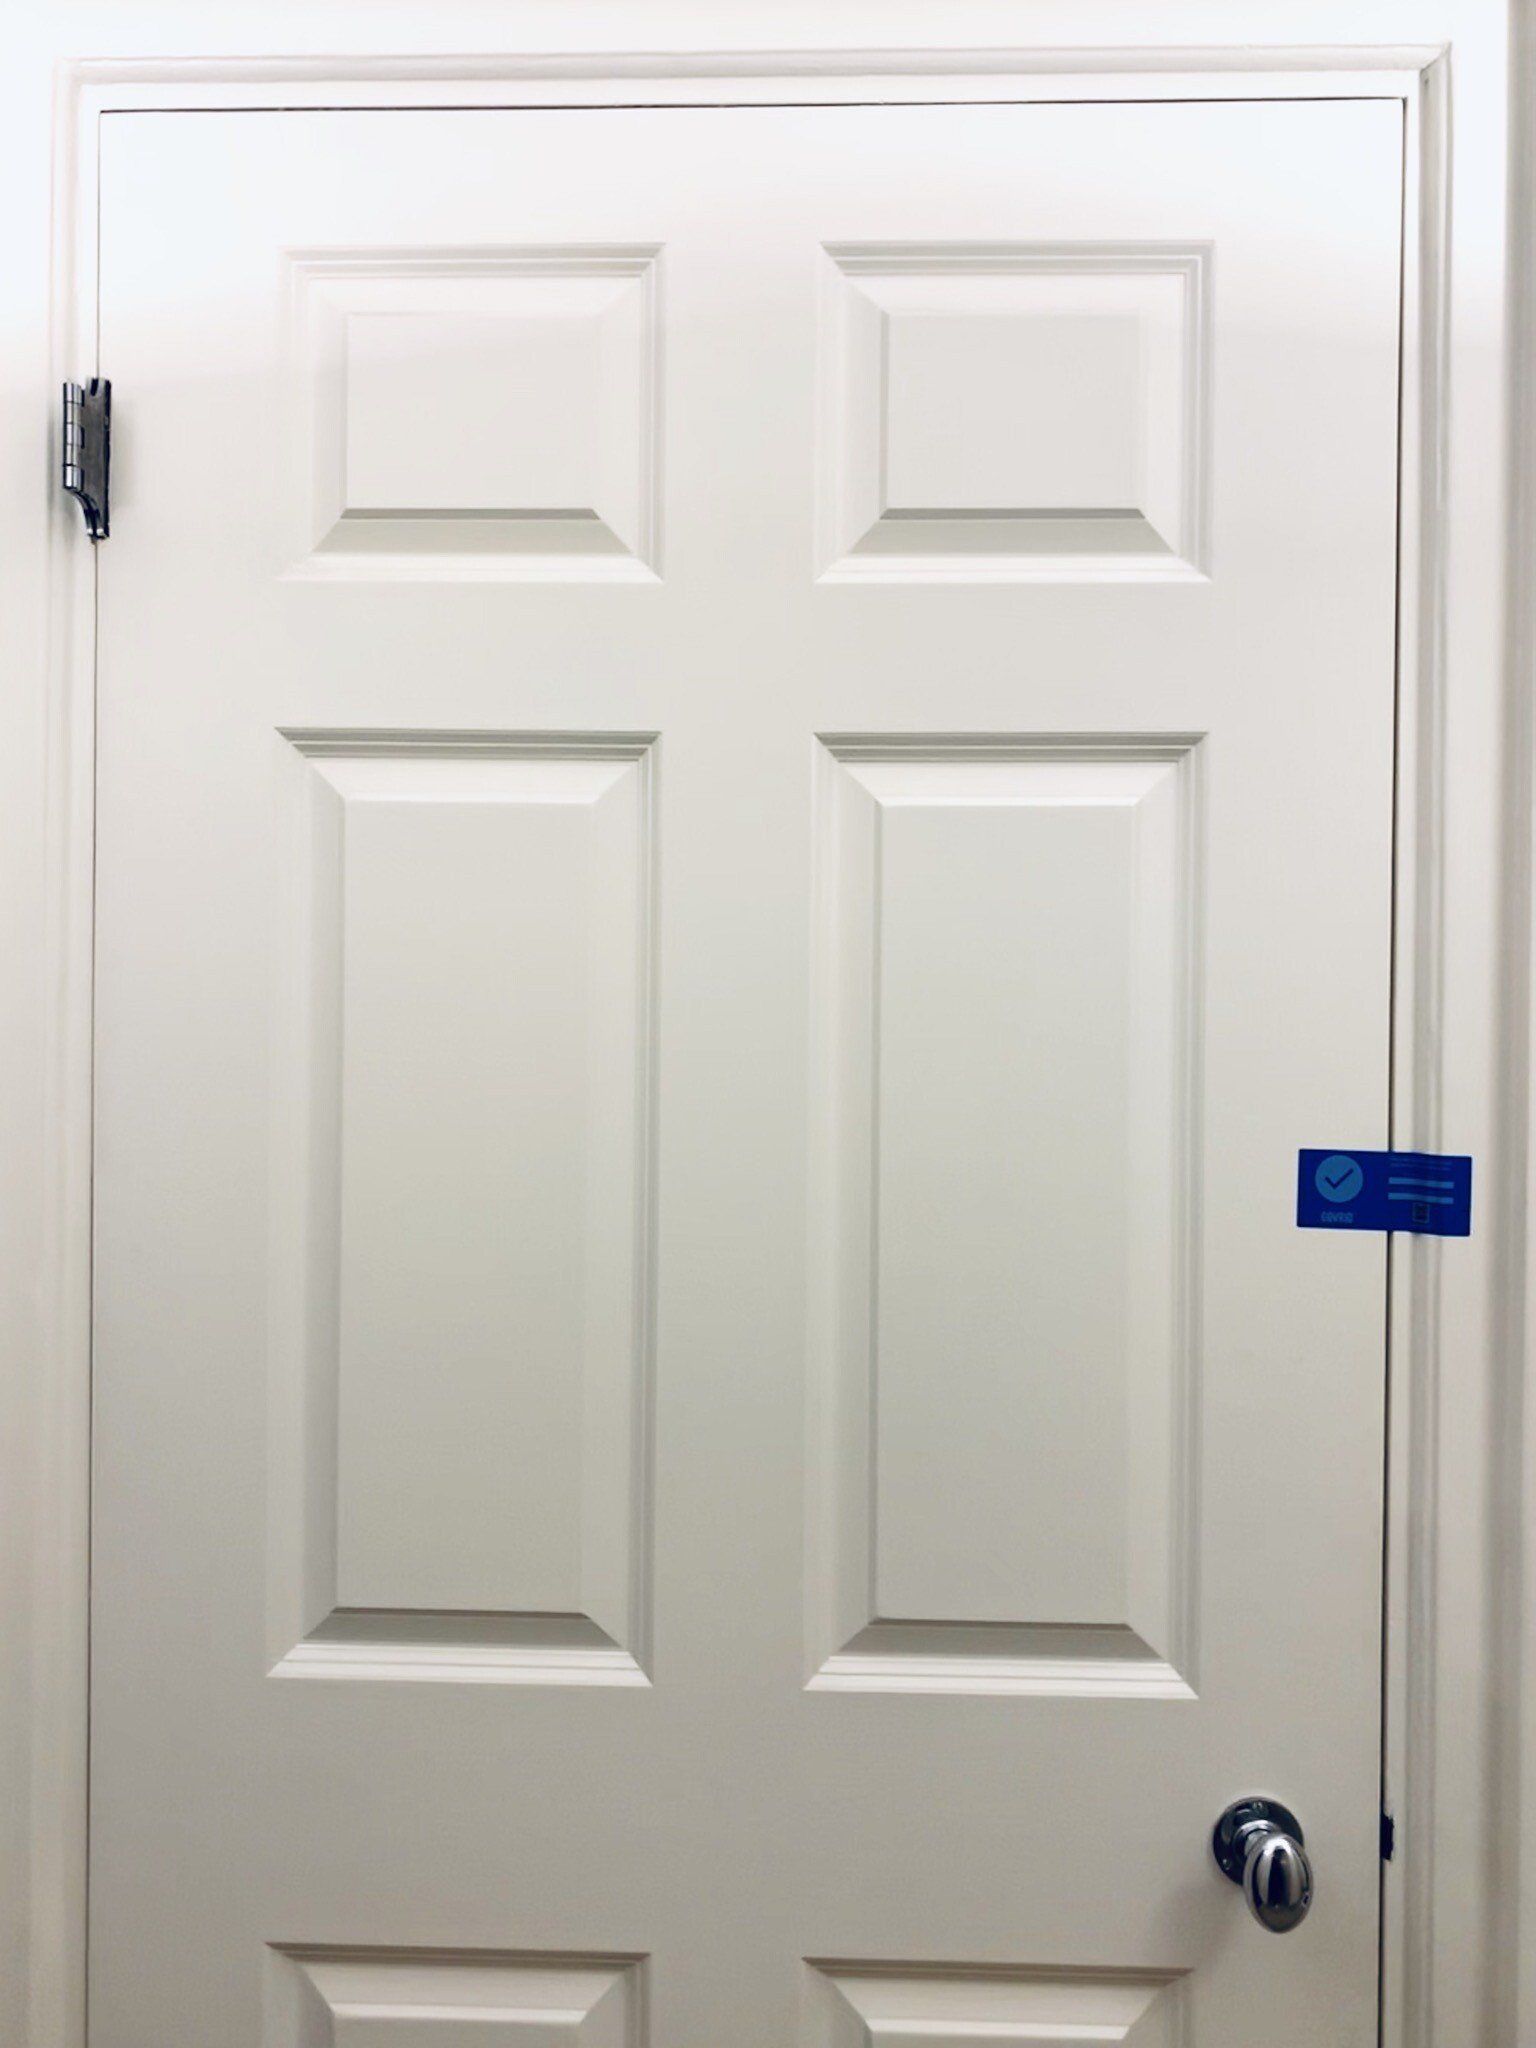 COV-RID tamper evident door seal on  a door